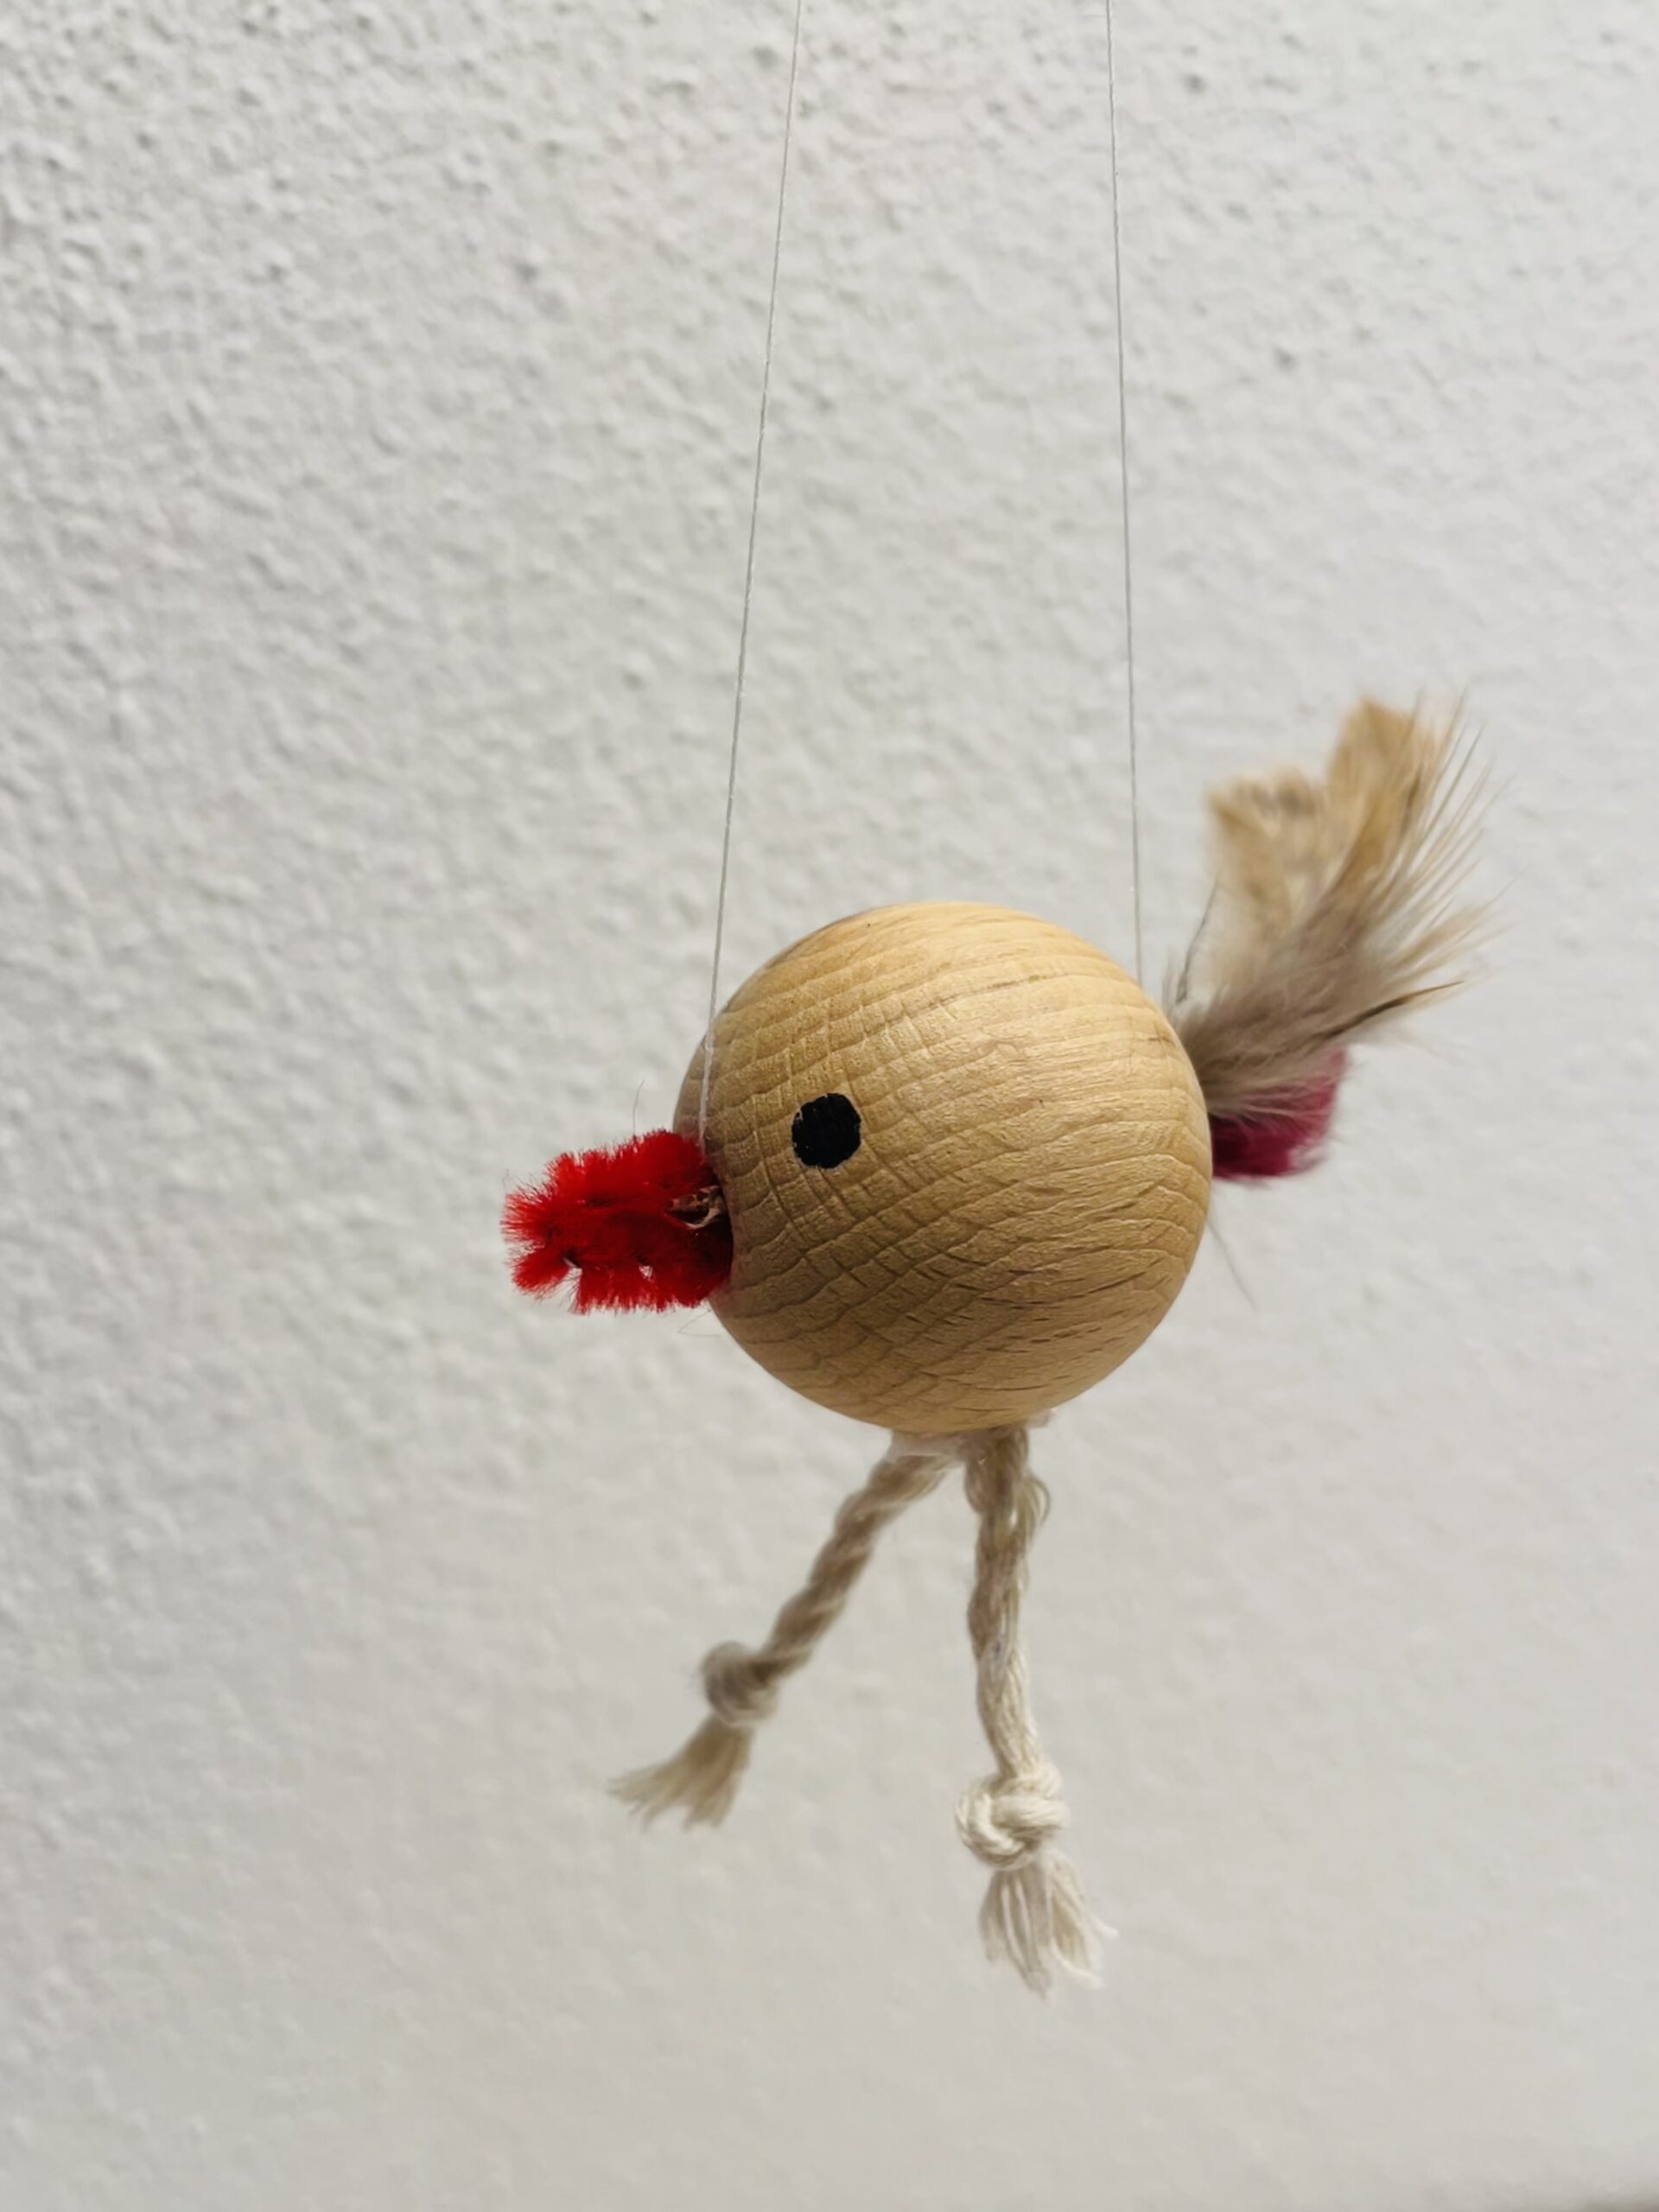 Bild zum Schritt 11 für das Bastel- und DIY-Abenteuer für Kinder: 'Fertig ist euer kleiner Vogel.   Hängt ihn an...'